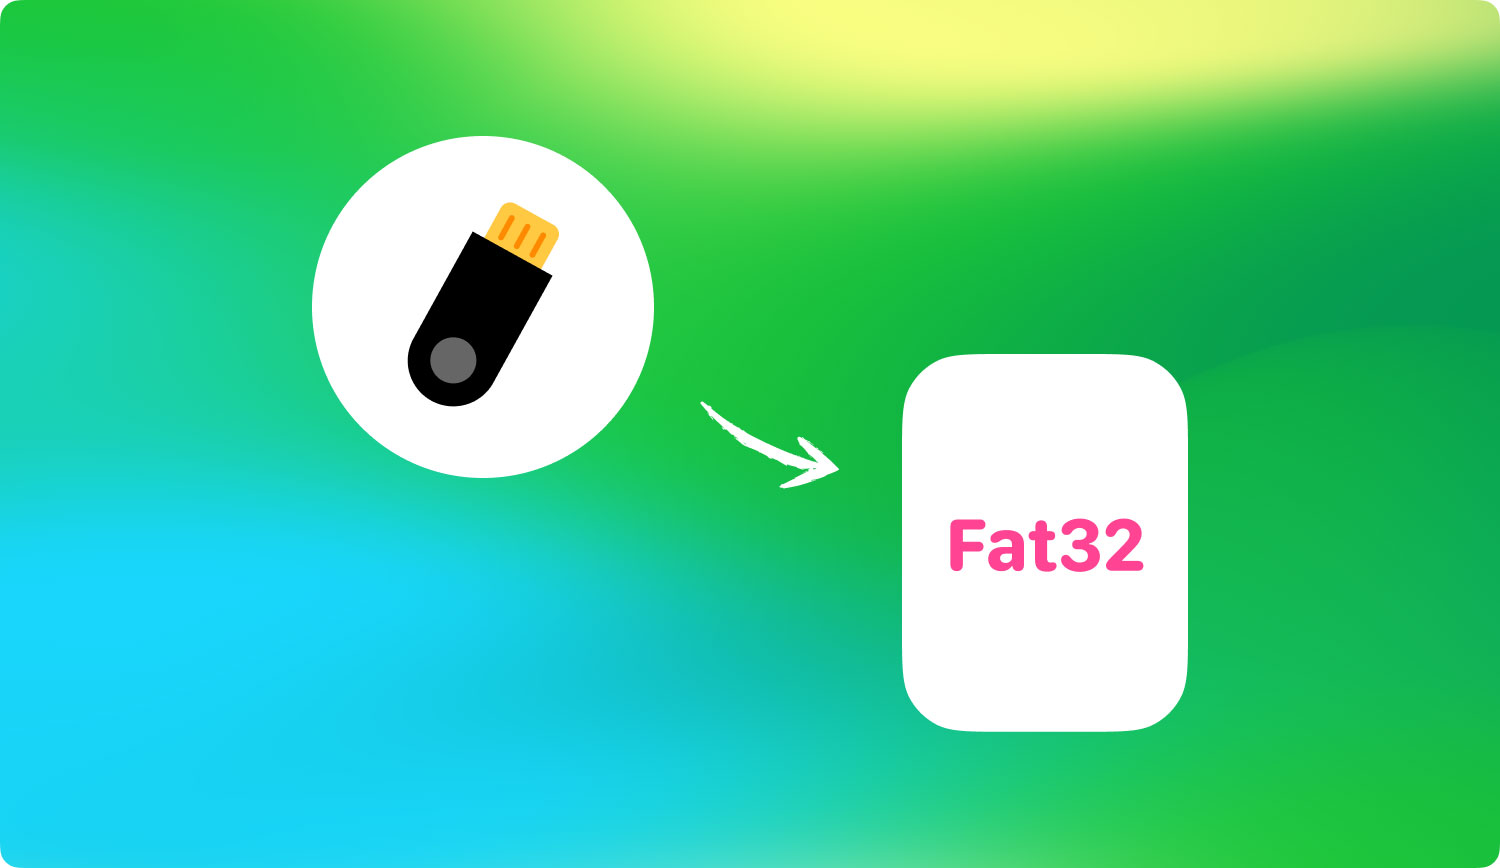 Flash Sürücü Mac Fat32 Nasıl Formatlanır